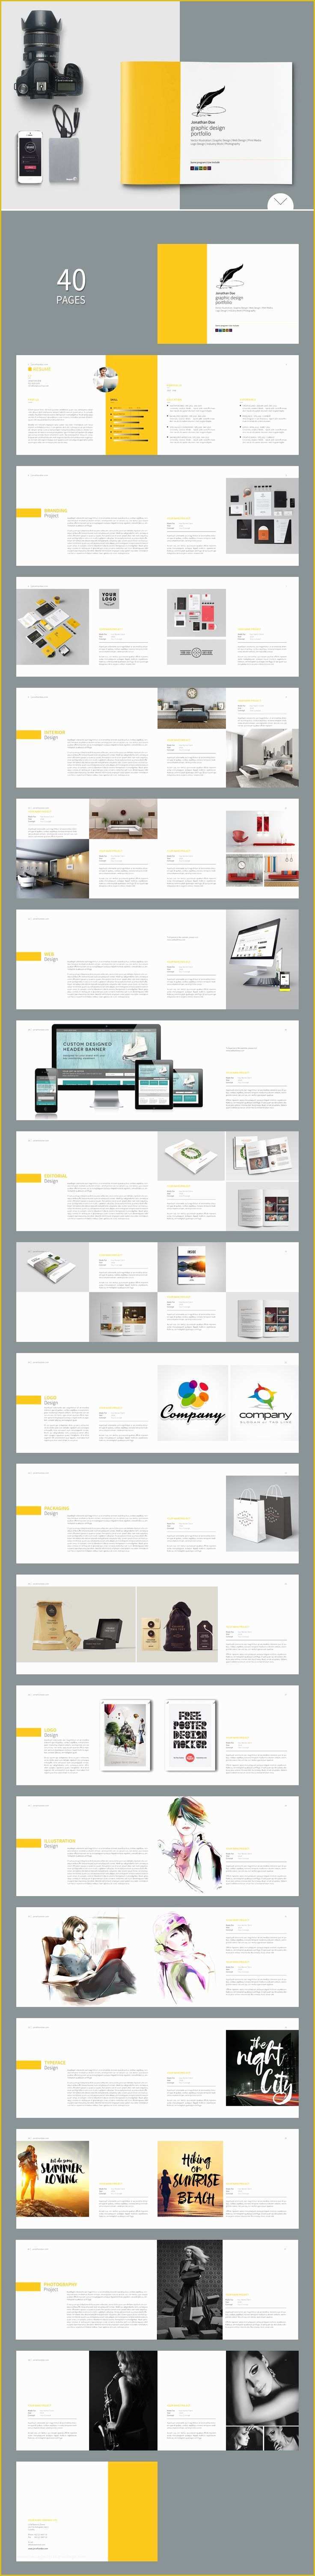 Architecture Portfolio Template Indesign Free Of Free Indesign Report Templates Graphic Design Print